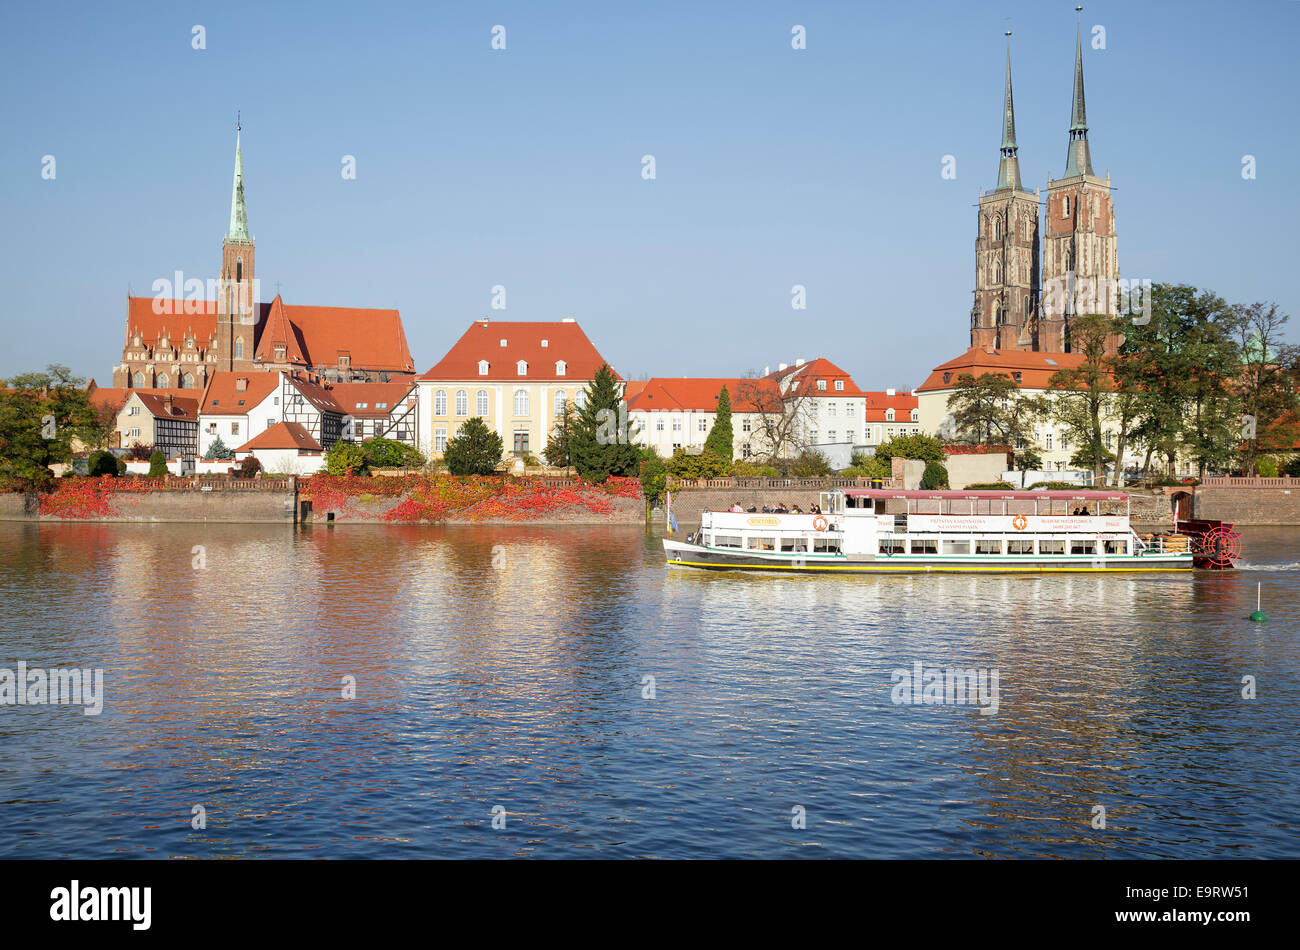 Île Ostrow Tumski cathédrale avec bateau de tourisme sur l'Oder, Wroclaw, Pologne Banque D'Images